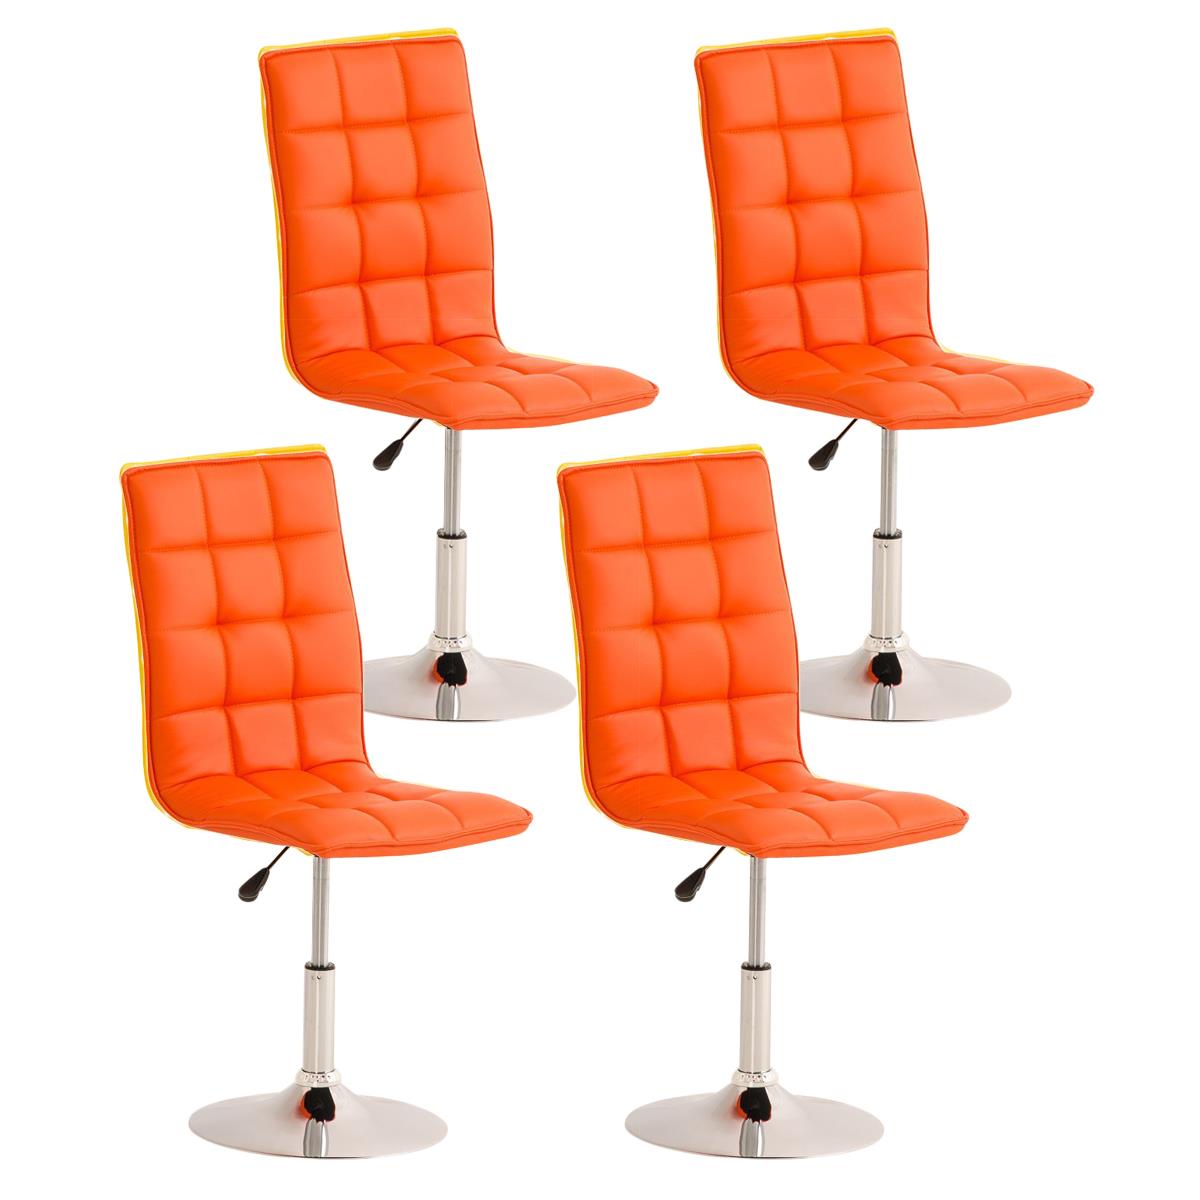 Lote de 4 sillas de Comedor o Cocina PESCARA PIEL, En Naranja, Altura Regulable